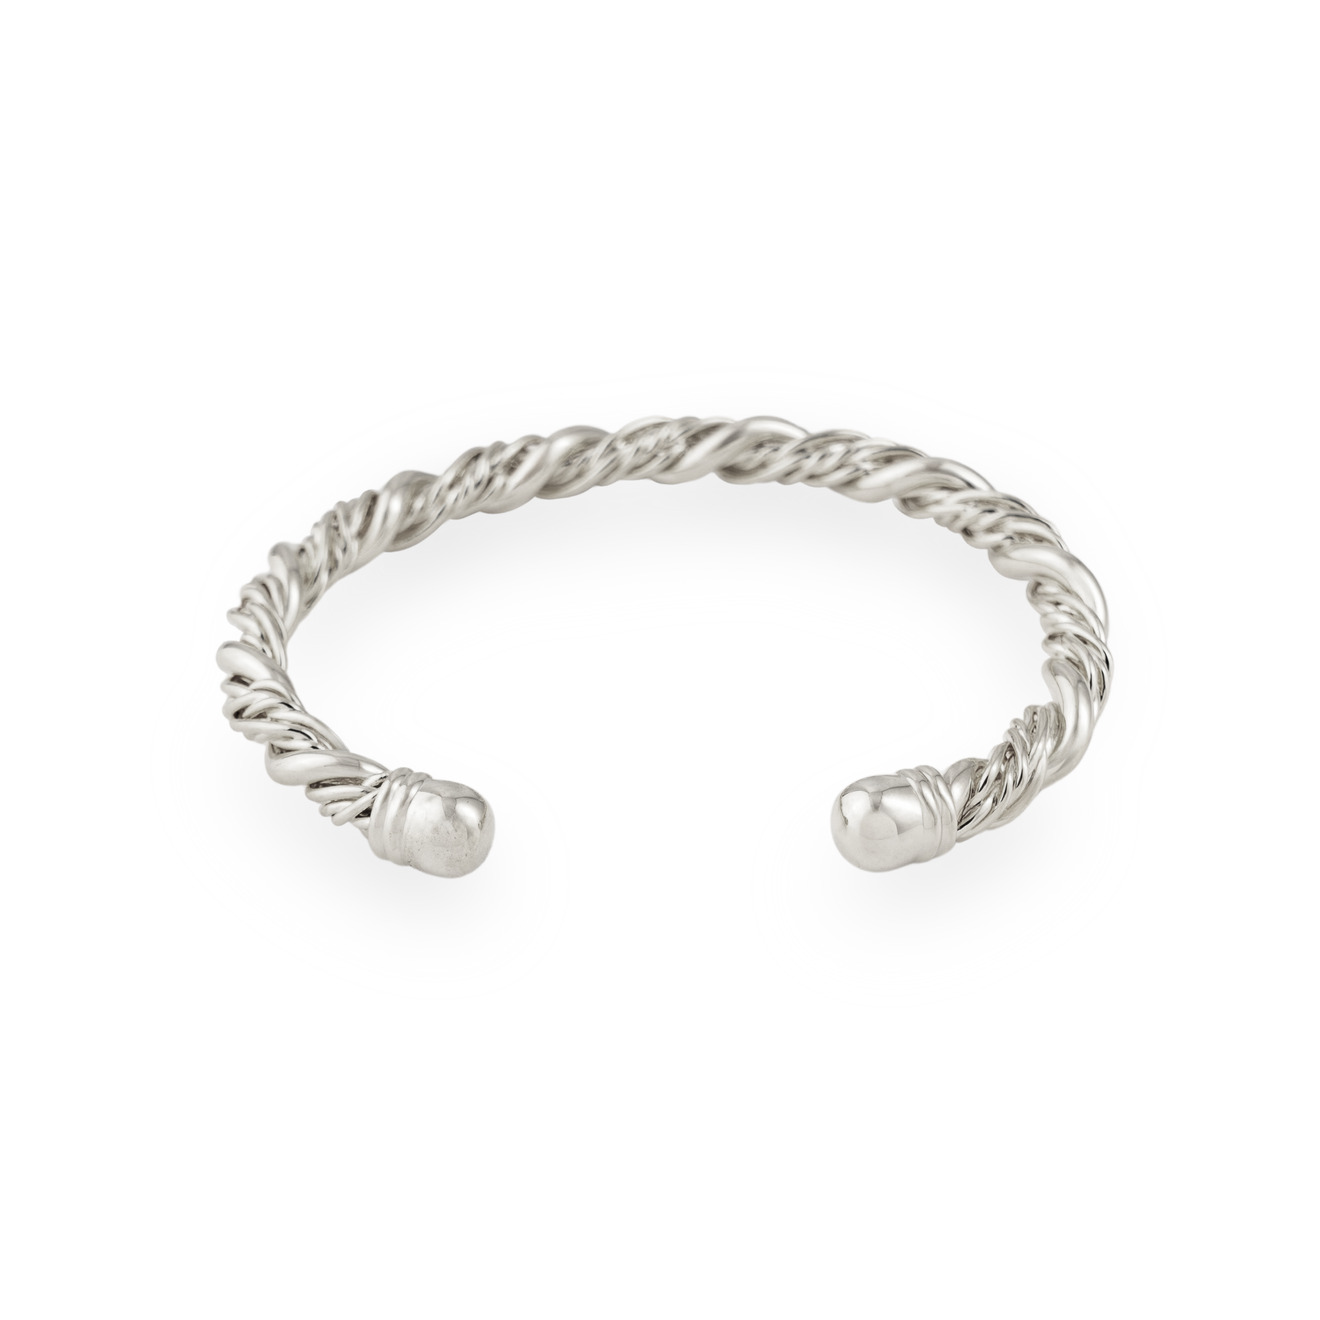 Free Form Jewelry Серебристый браслет перекрученный браслет free form jewelry золотистый со спиралью 1 шт